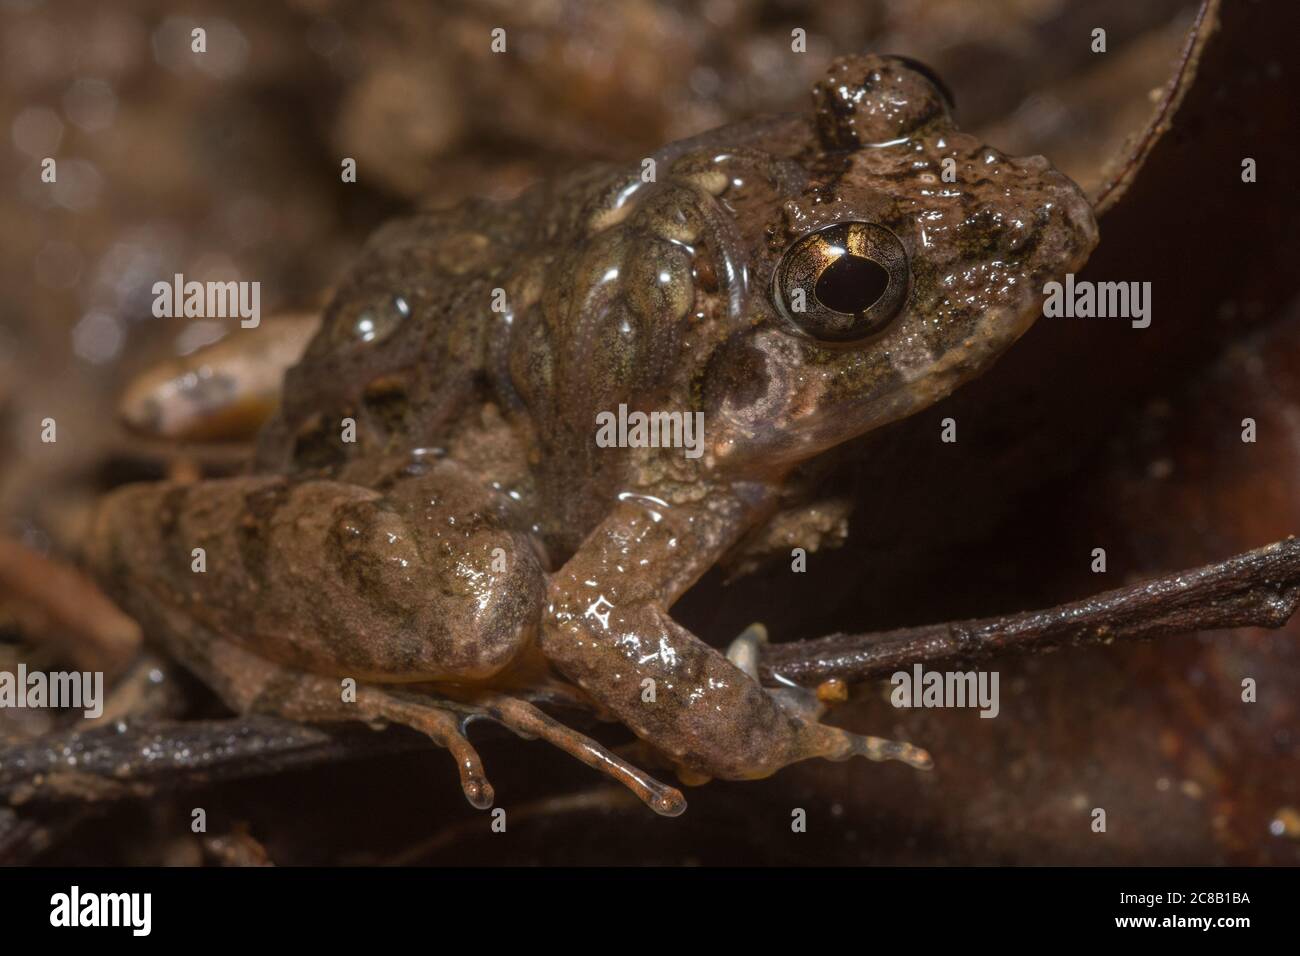 Grenouille gardienne (Limnonectes finchi), un homme porte ses têtards sur son dos. Cette grenouille est endémique à Bornéo. Banque D'Images